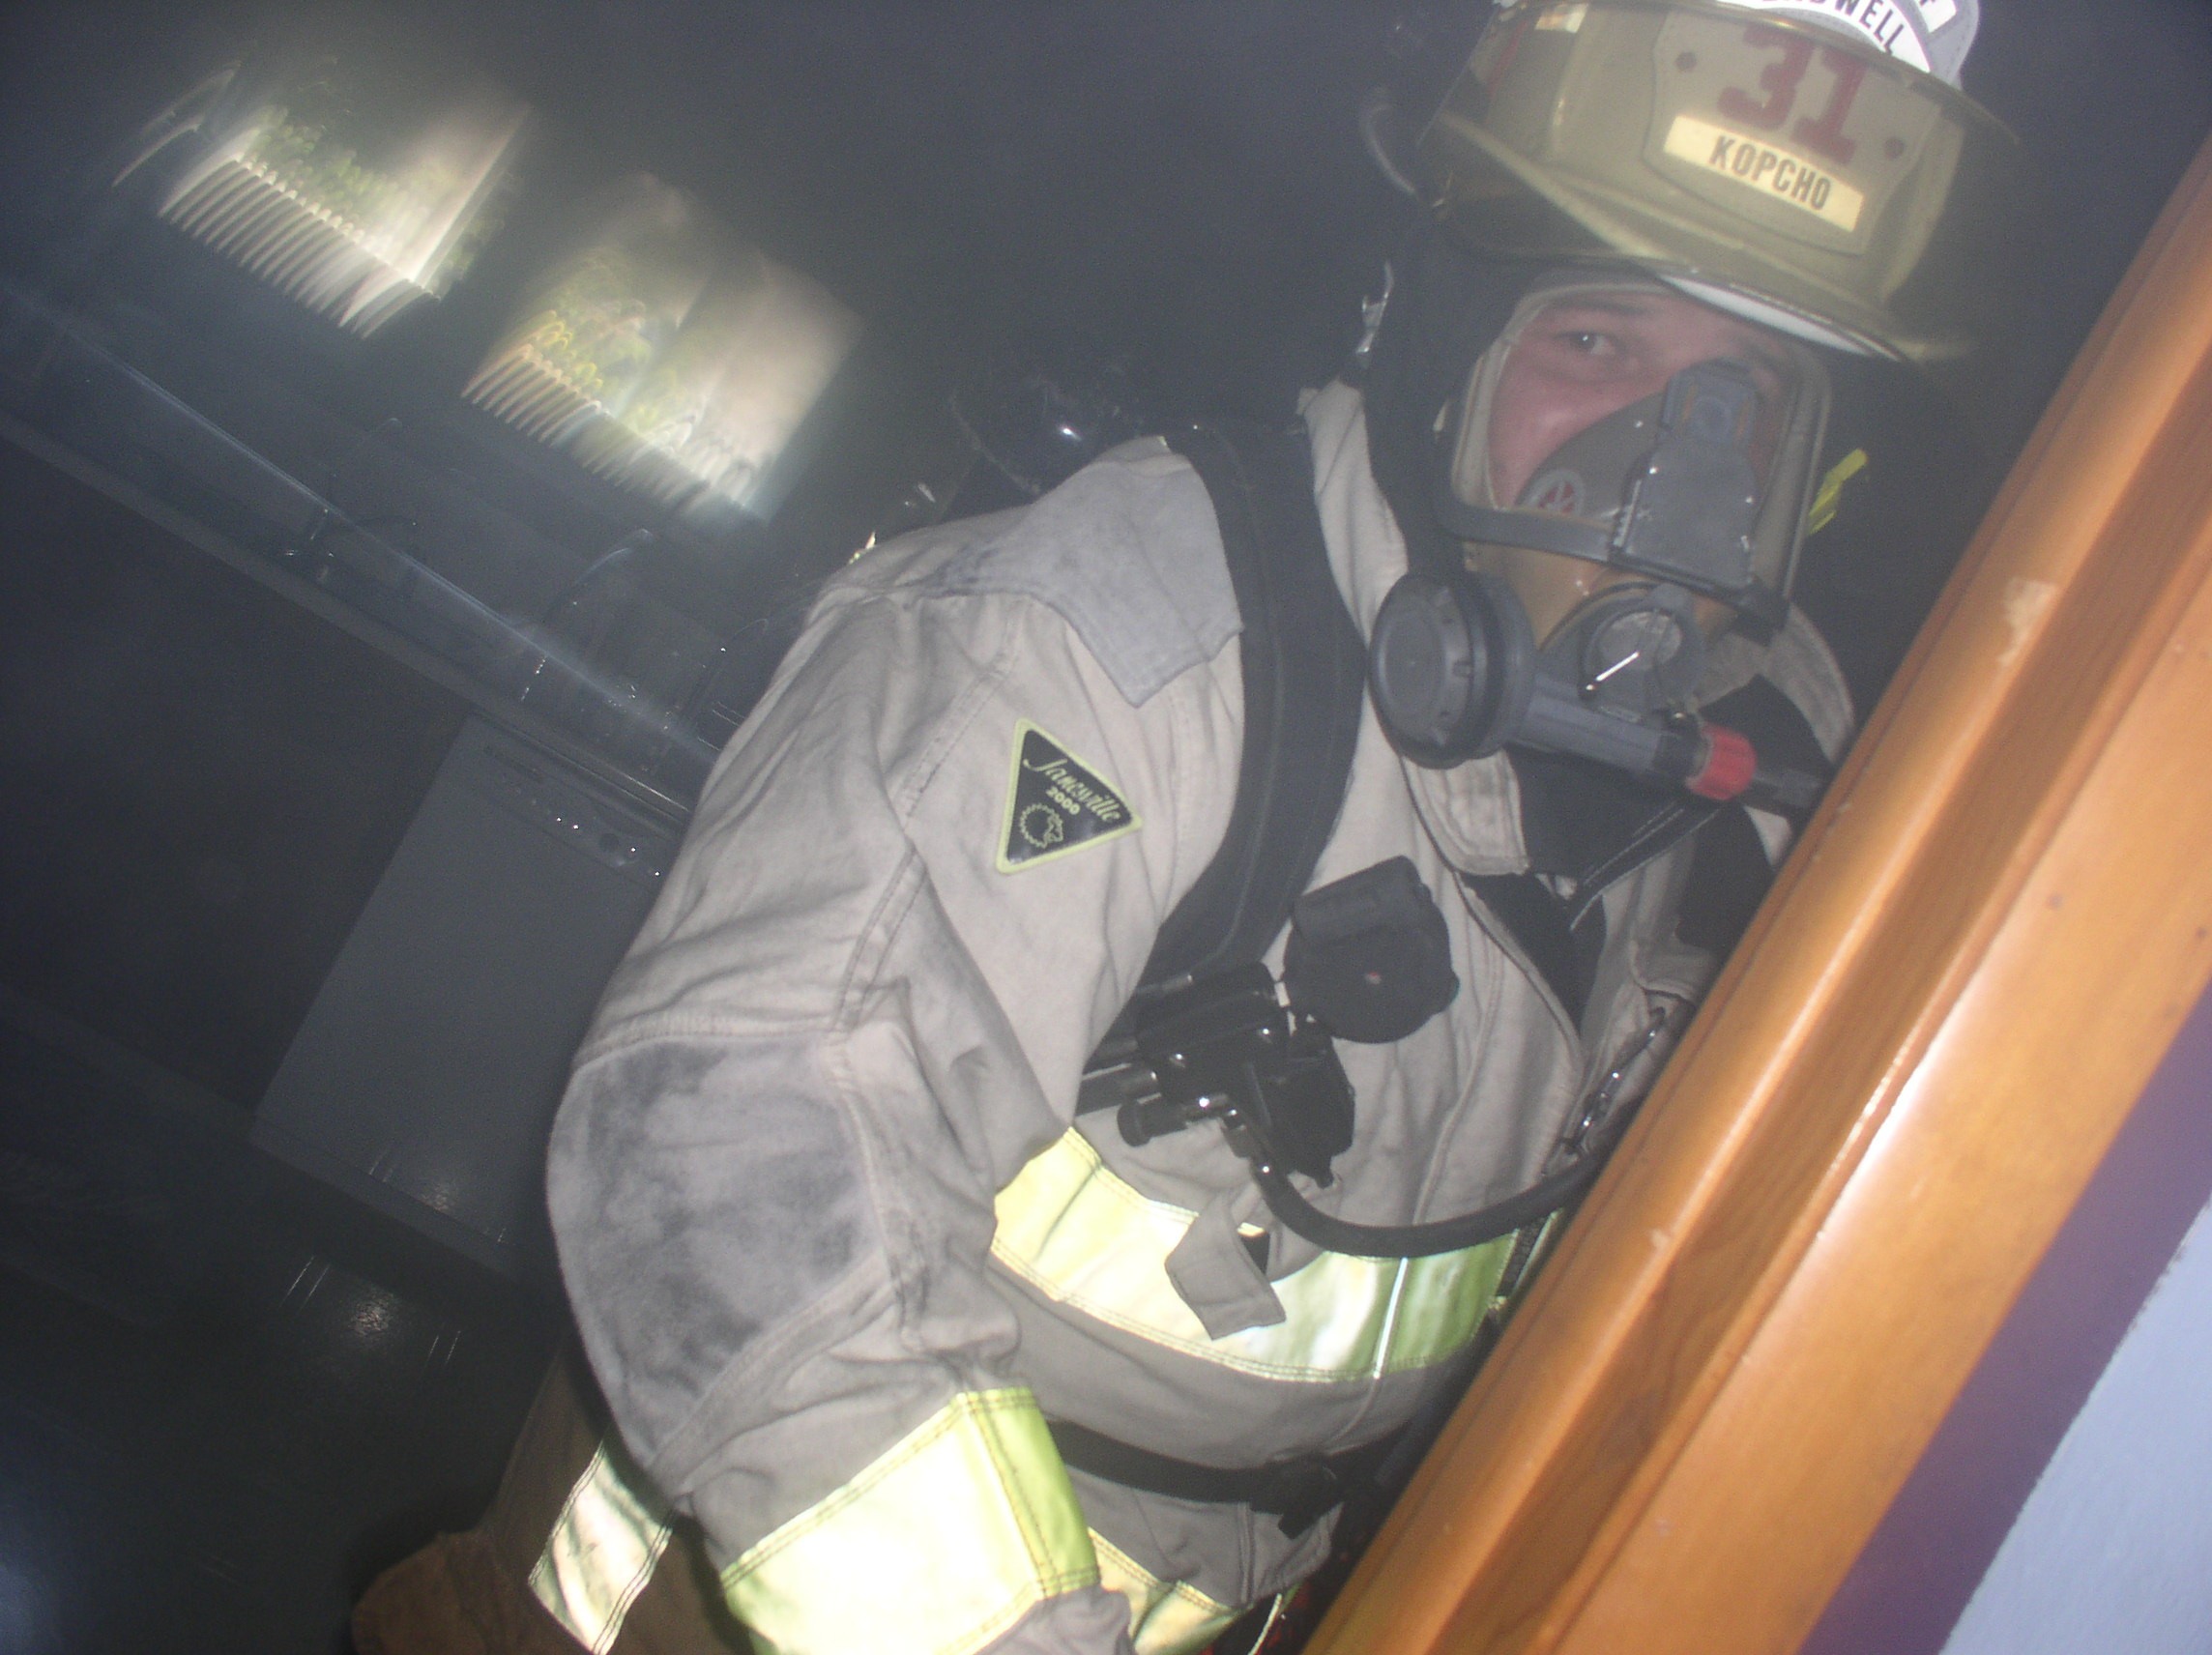 09-02-04  Response - Fire - Manhattan